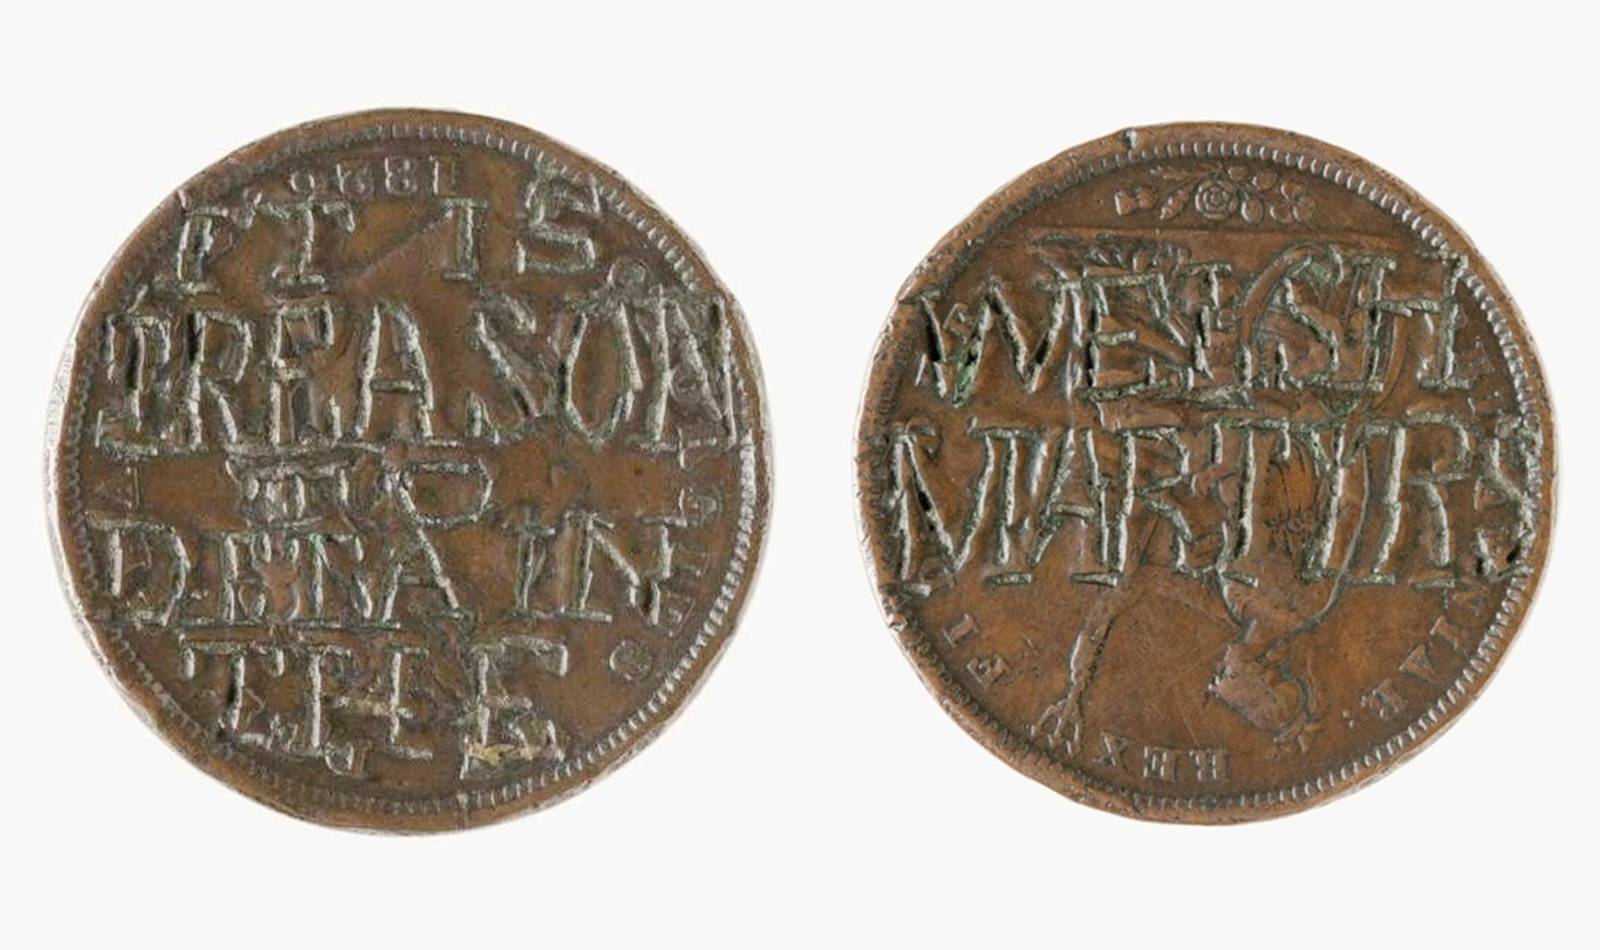 engraved token of lewis lyons, 1831 